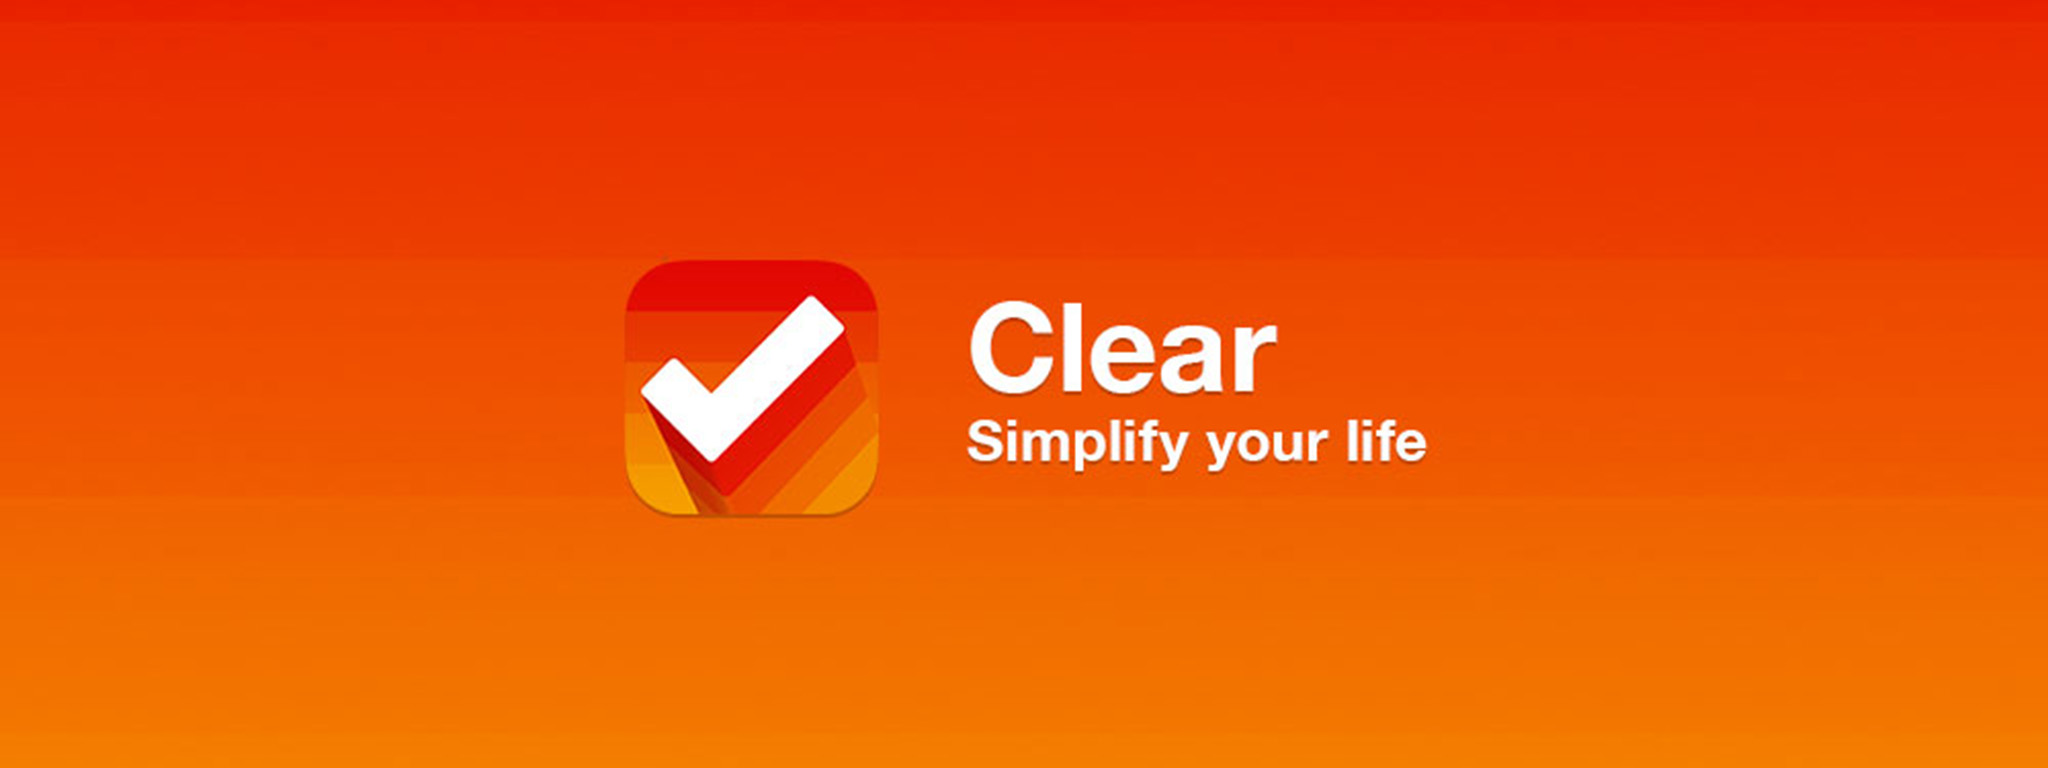 [iOS] Clear - ứng dụng tạo công việc cần làm giao diện đẹp, đơn giản, nhanh gọn